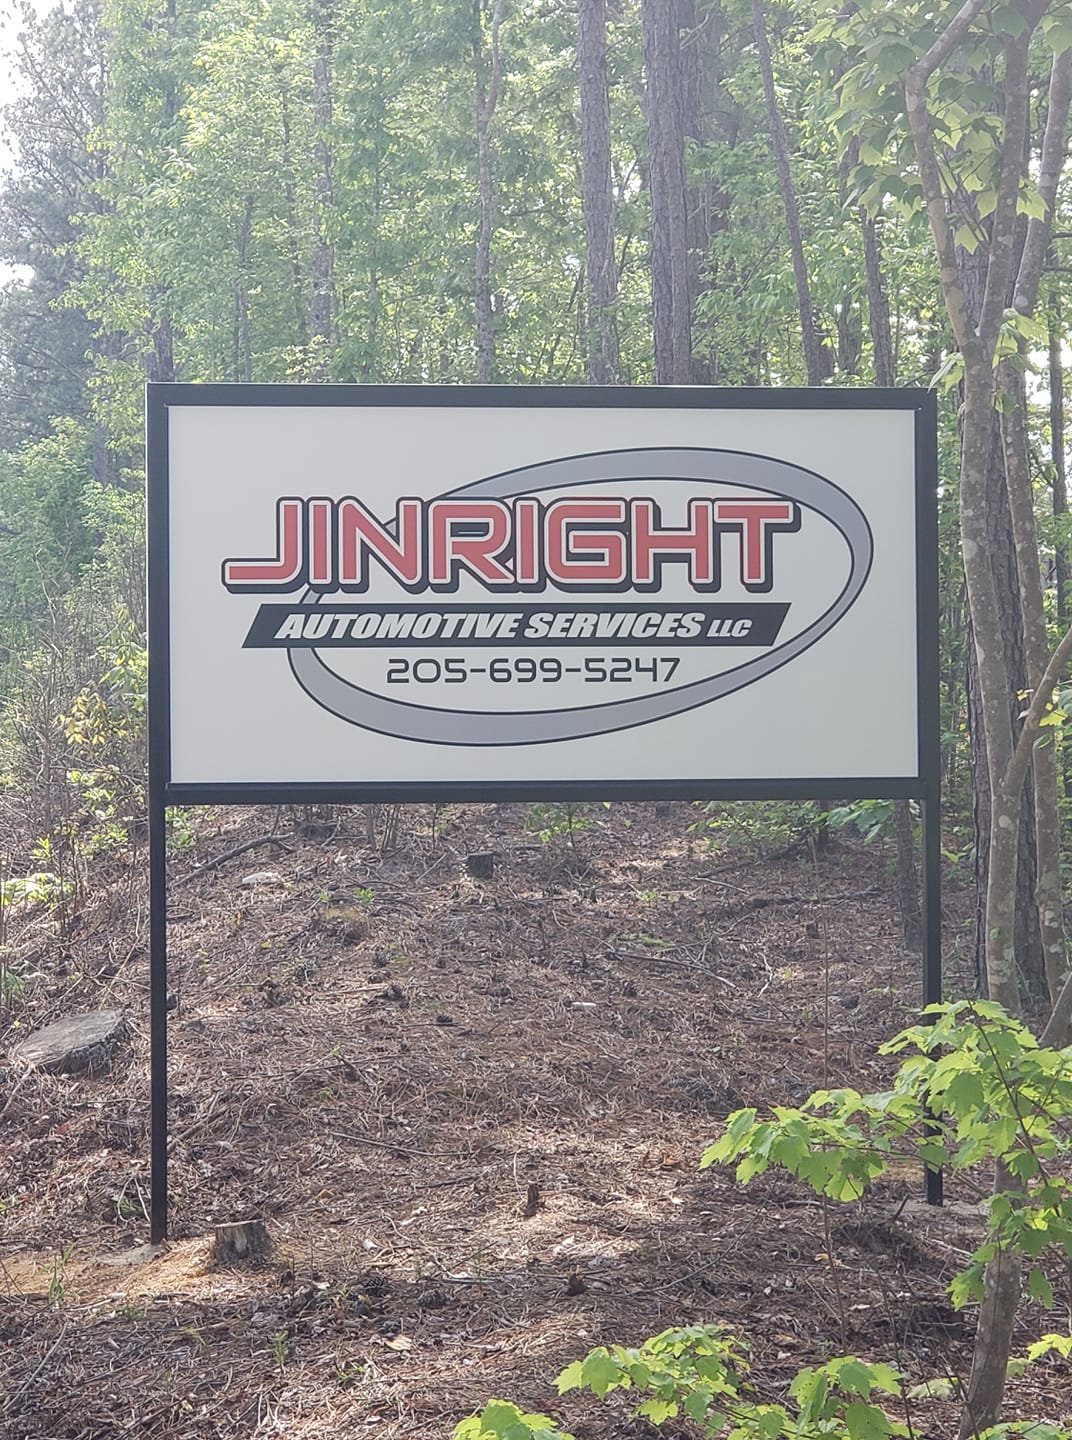 JINRIGHT AUTOMOTIVE SERVICES LLC